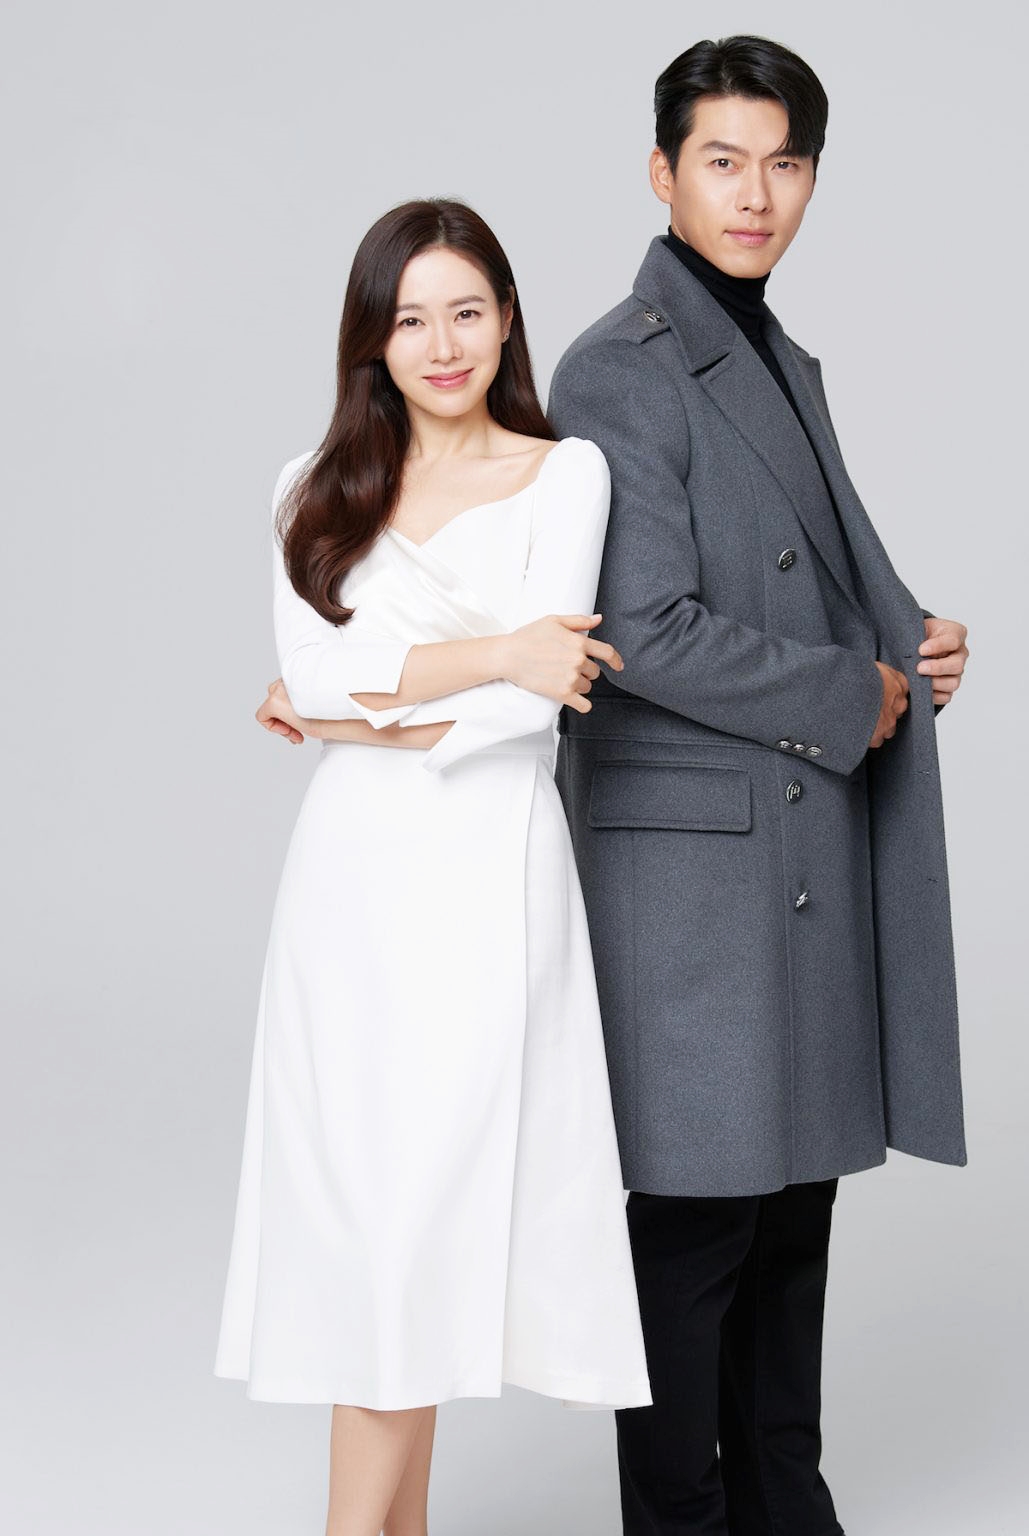 Gần đây Son Ye Jin rất hay làm 1 điều khiến Hyun Bin trông khác hẳn, chi tiết nhỏ cho thấy đám cưới thế kỷ đã đến gần? - Ảnh 10.